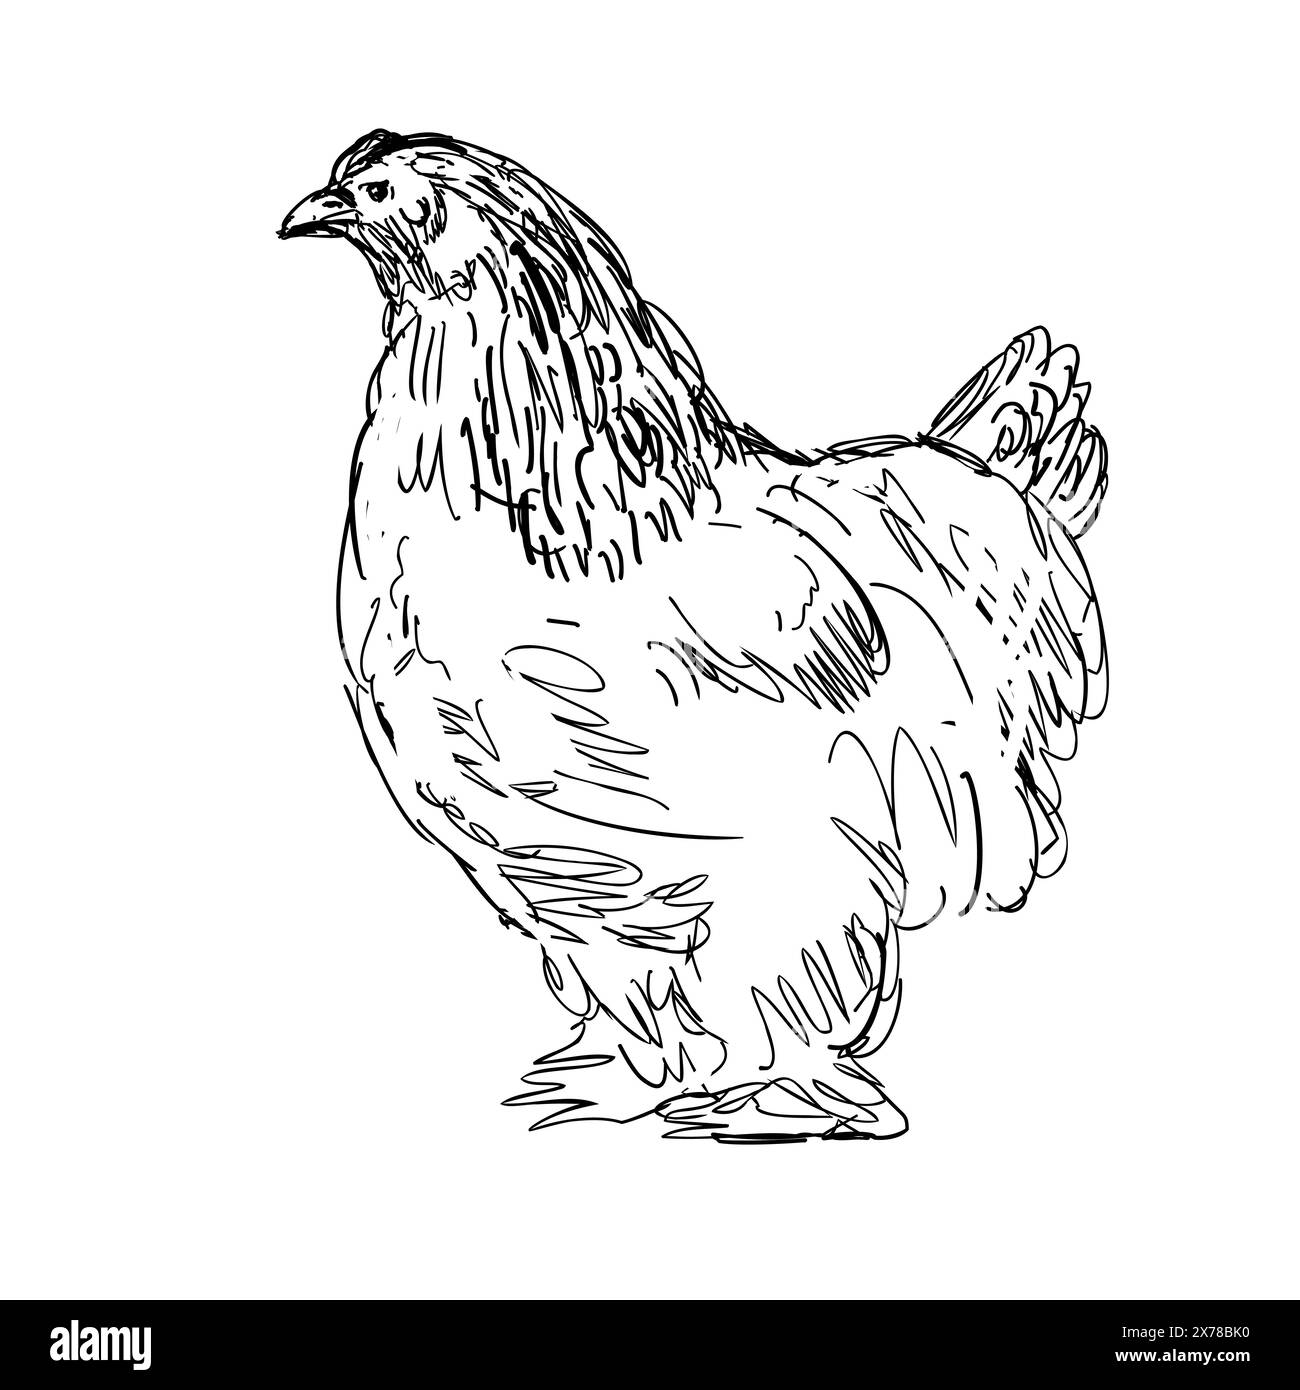 Dessin illustration de style croquis d'une poule Brahma, Brahma Pootra, Burnham, Gray Chittagong ou Shanghai, une race américaine de poulet domestique vu f Illustration de Vecteur